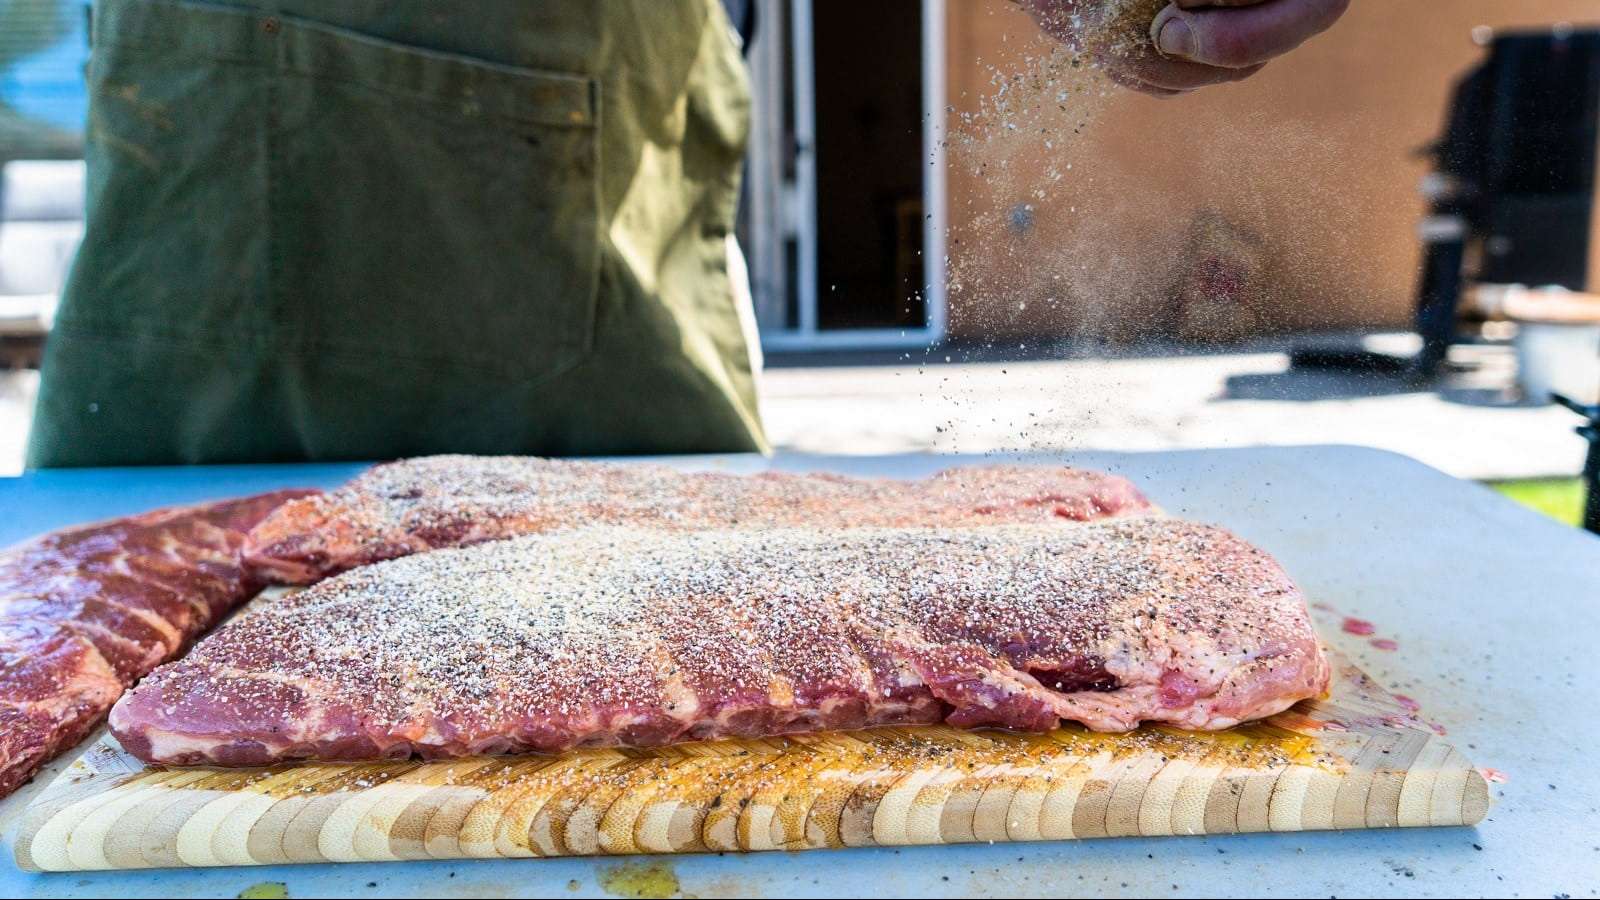 Une personne saupoudre un mélange d'épices sur des gros morceaux de côtes levées de porc cru.